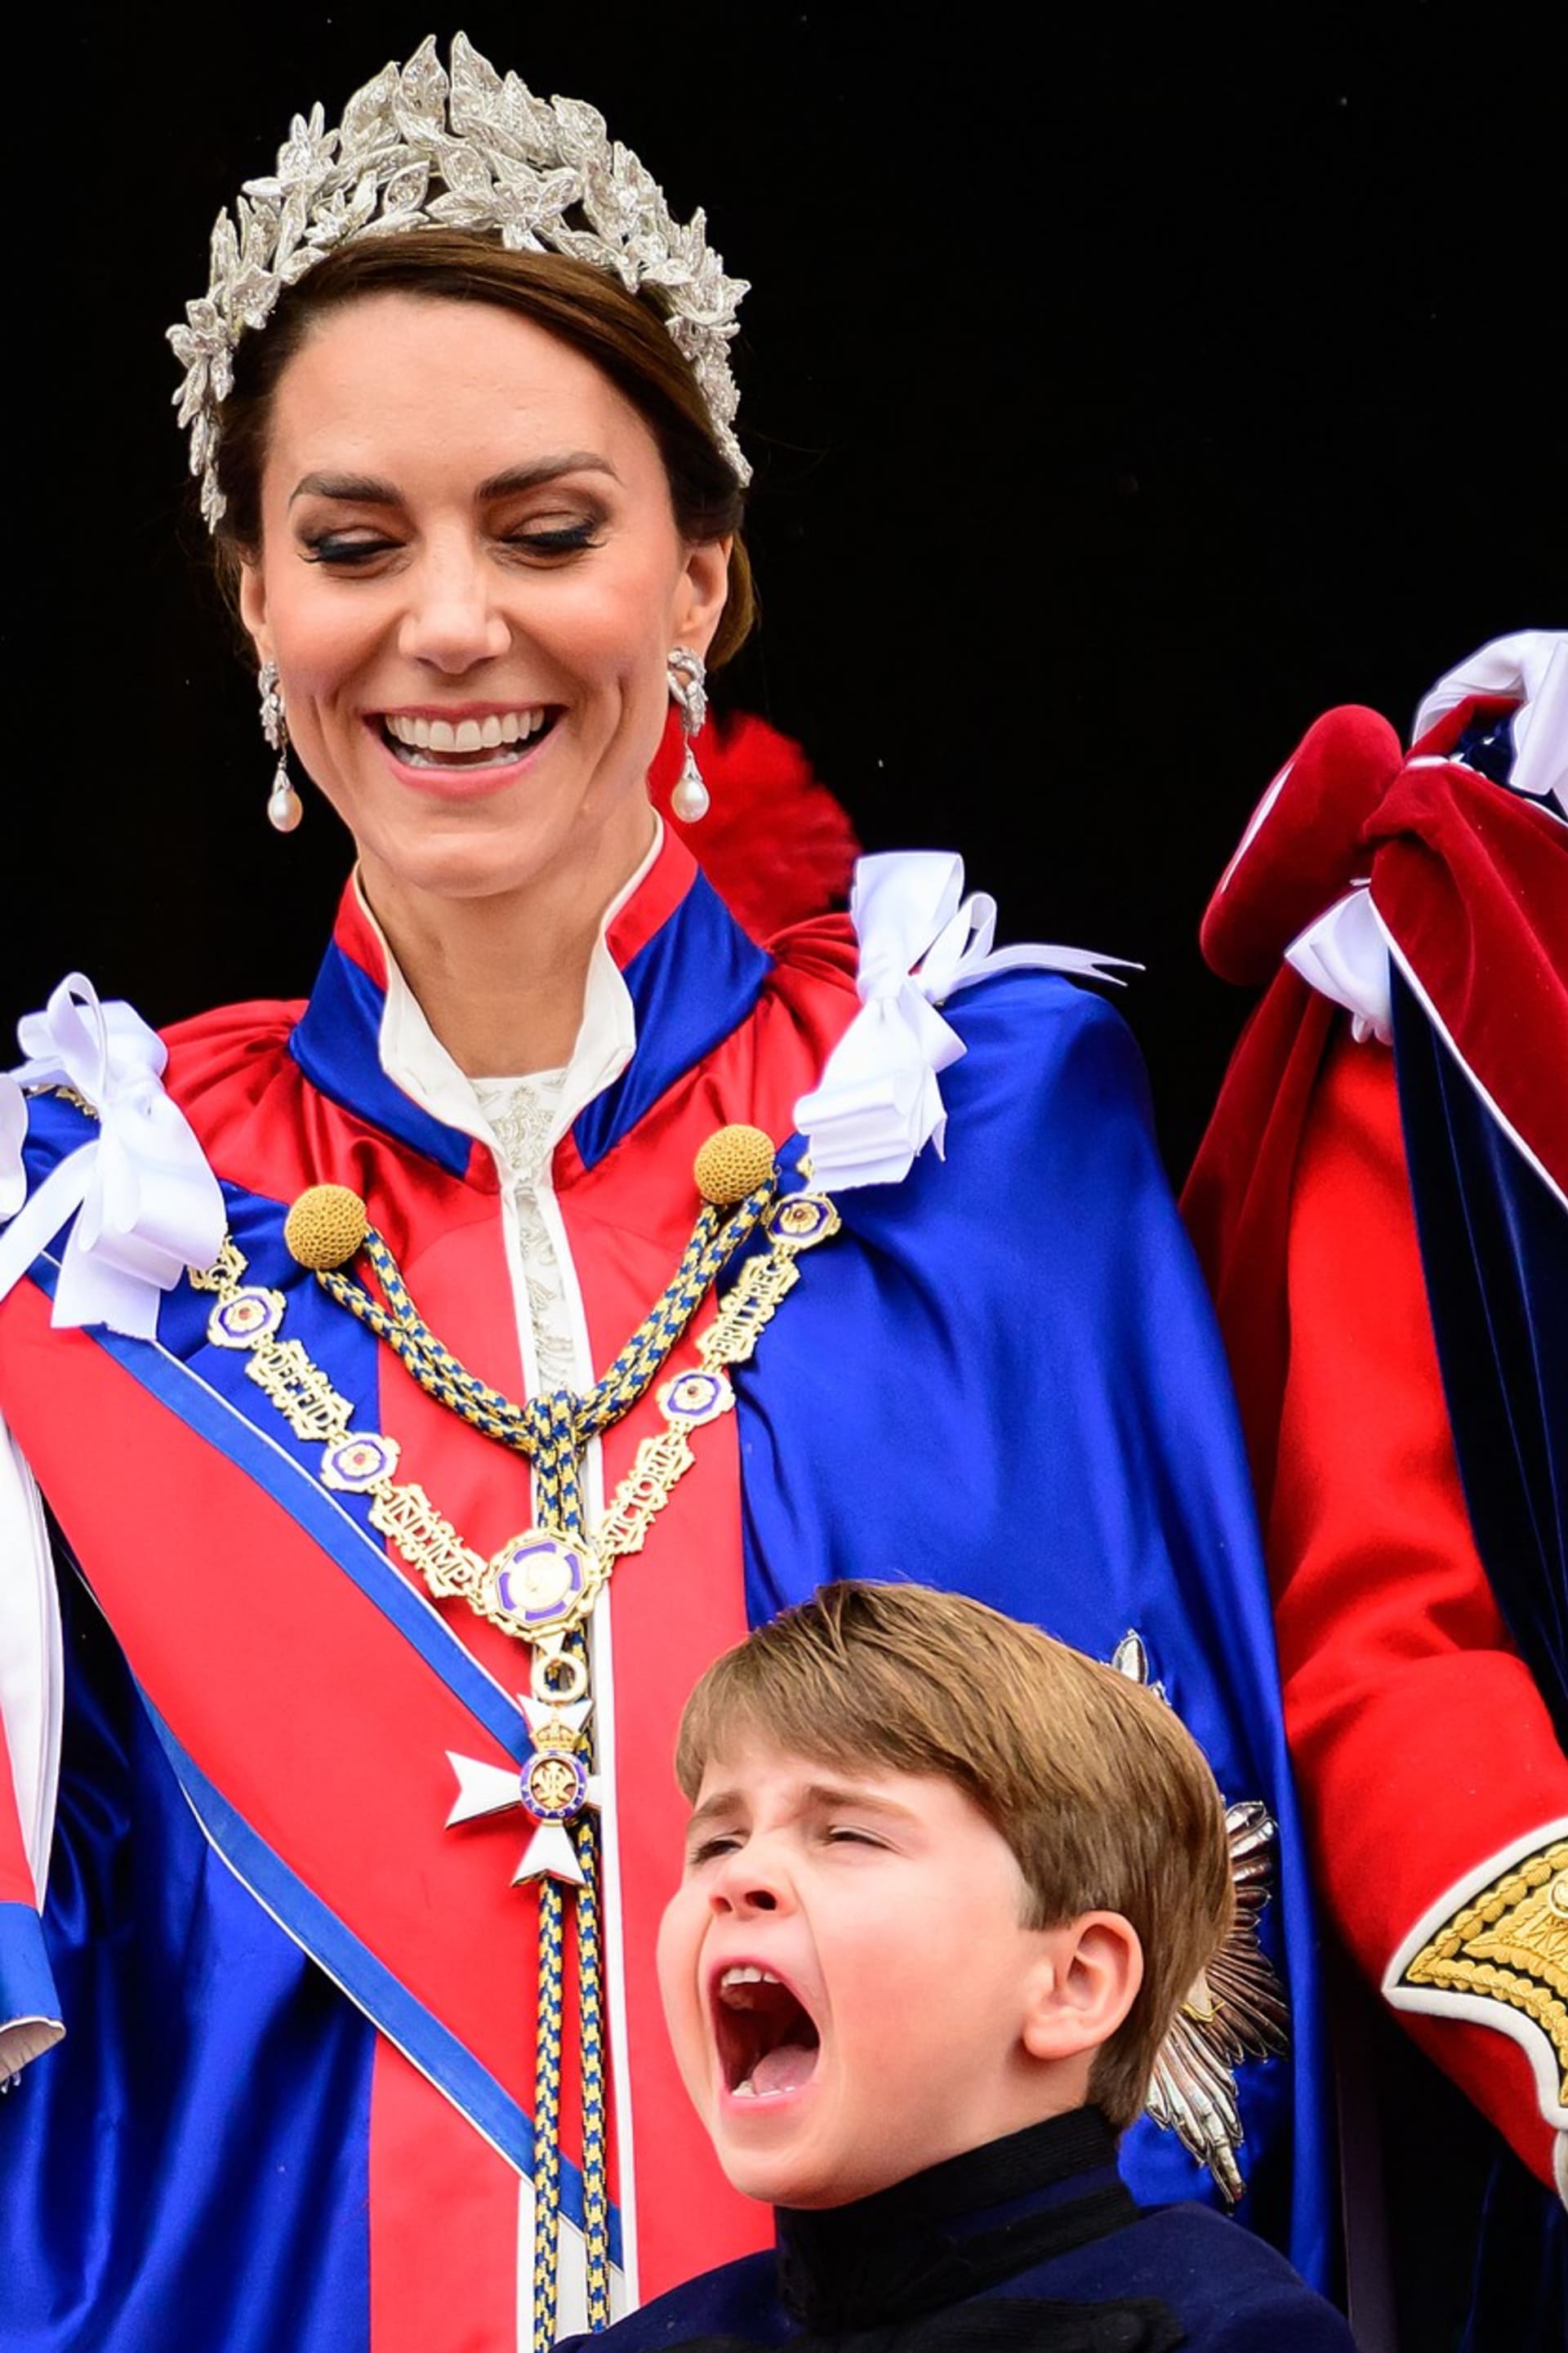 Princezna Catherine, maminka Louise, se jeho úšklebkům usmívala.